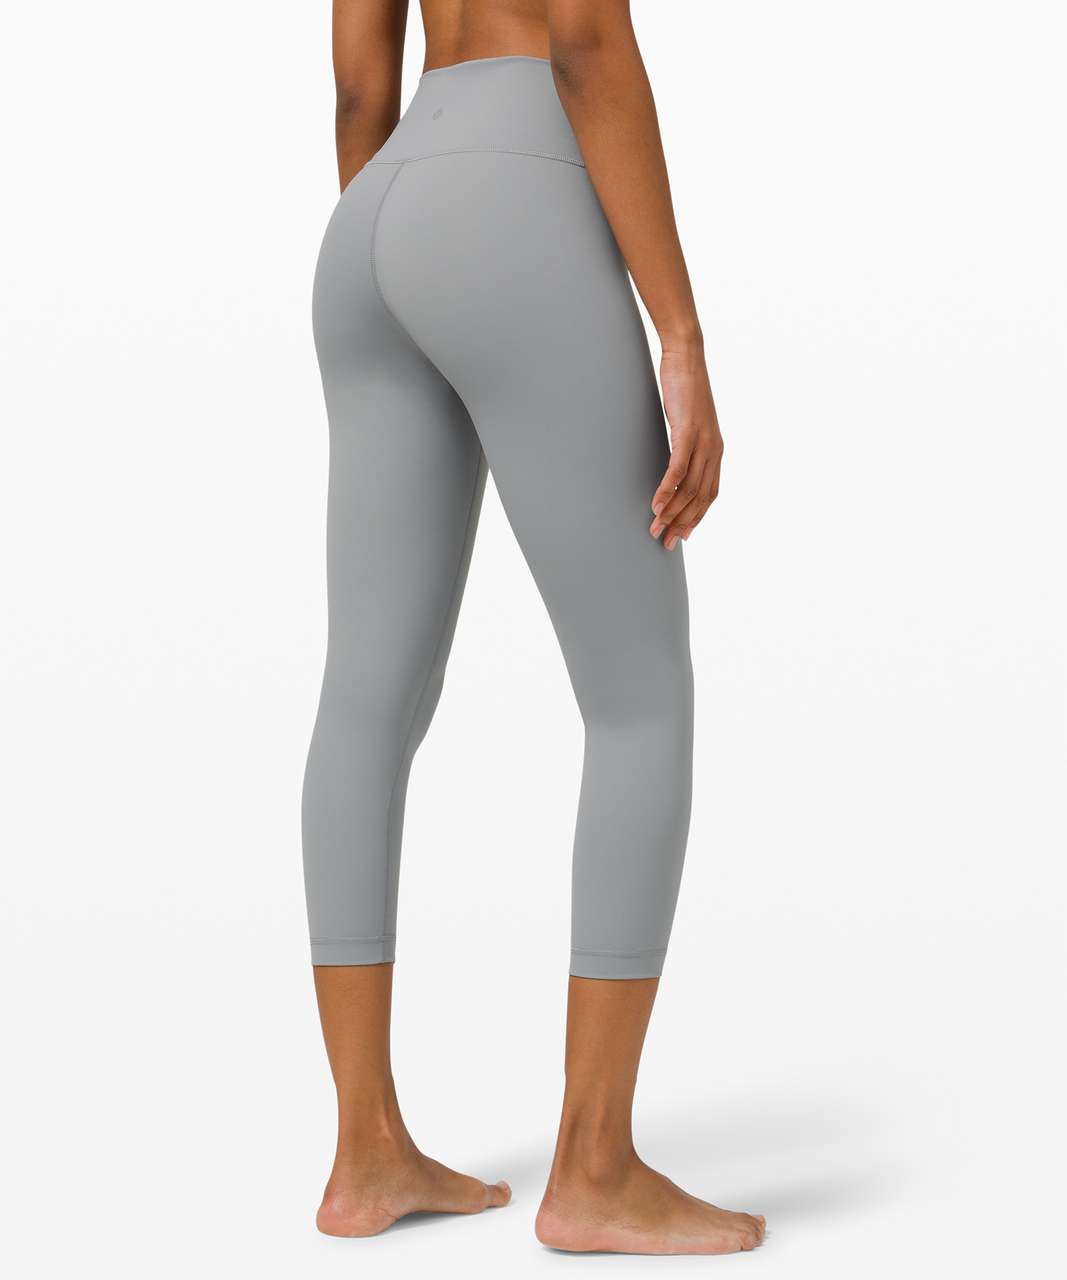 Lululemon Wunder Under Flecked Gray Luxtreme 7/8 Tight Legging Yoga Size: 2